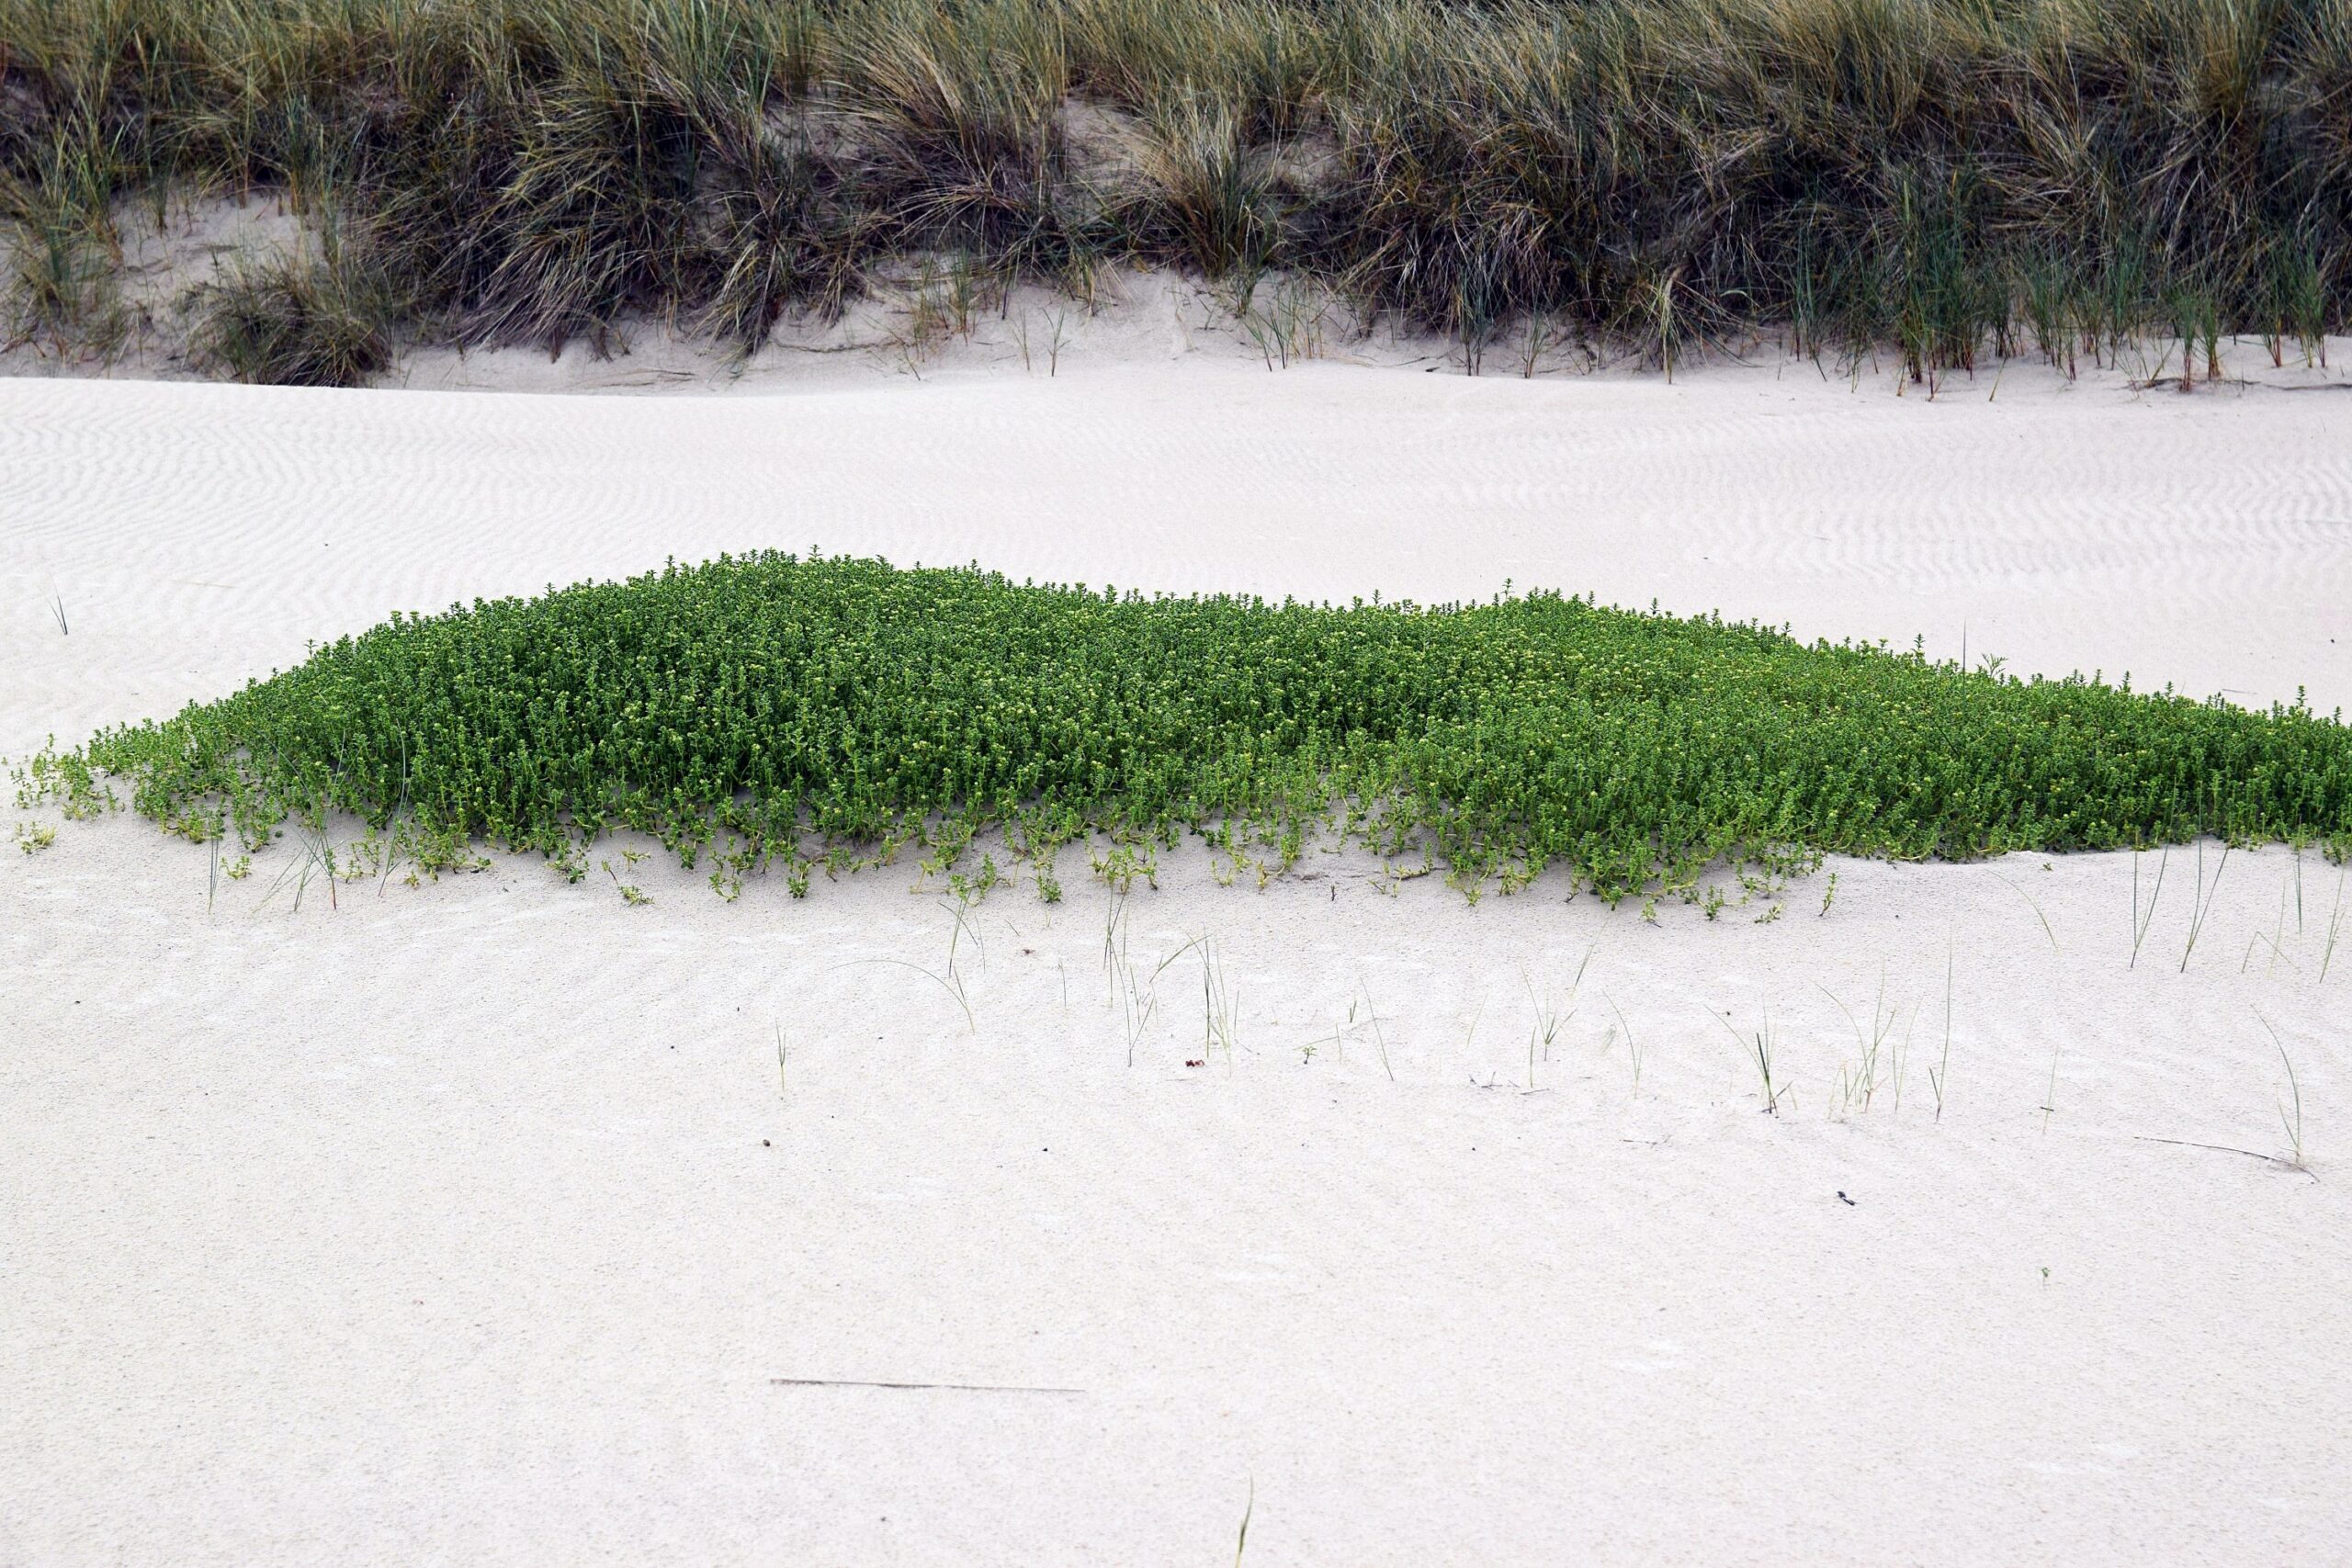 Zdjęcie dużej zielonej kępy honkenii, rosnącej na plaży.